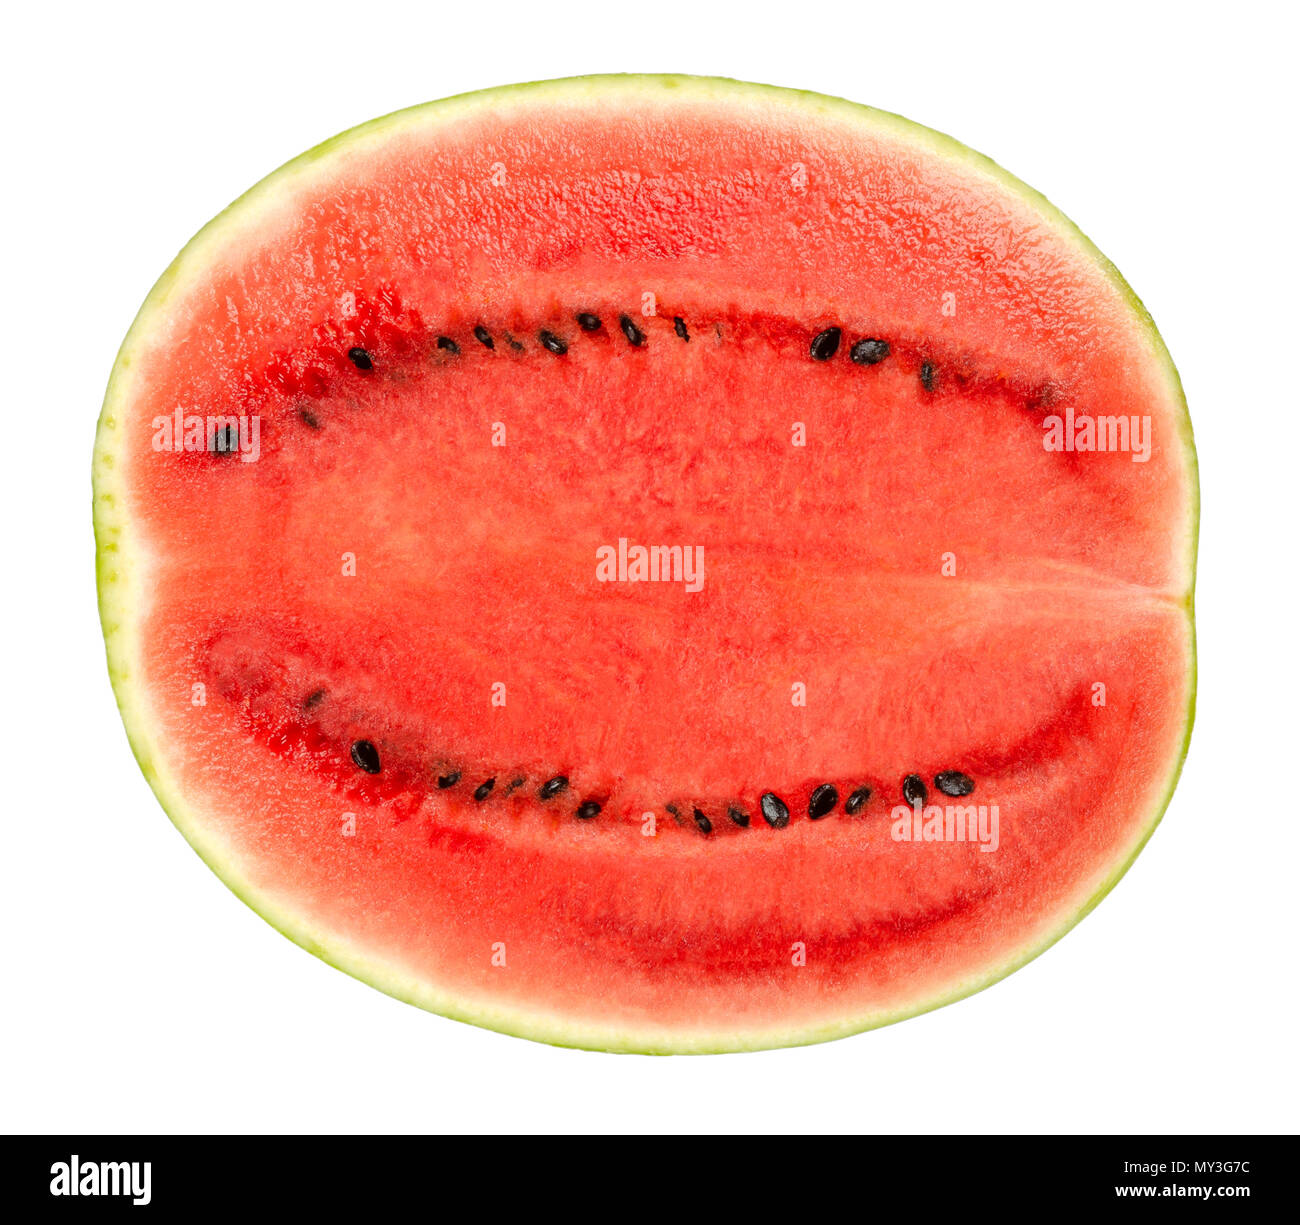 Süße Wassermelonen Hälfte, Querschnitt, Vorderansicht, auf weißem Hintergrund. Reife Früchte von Citrullus lanatus mit grün gestreifte Haut, rotes Fruchtfleisch. Stockfoto